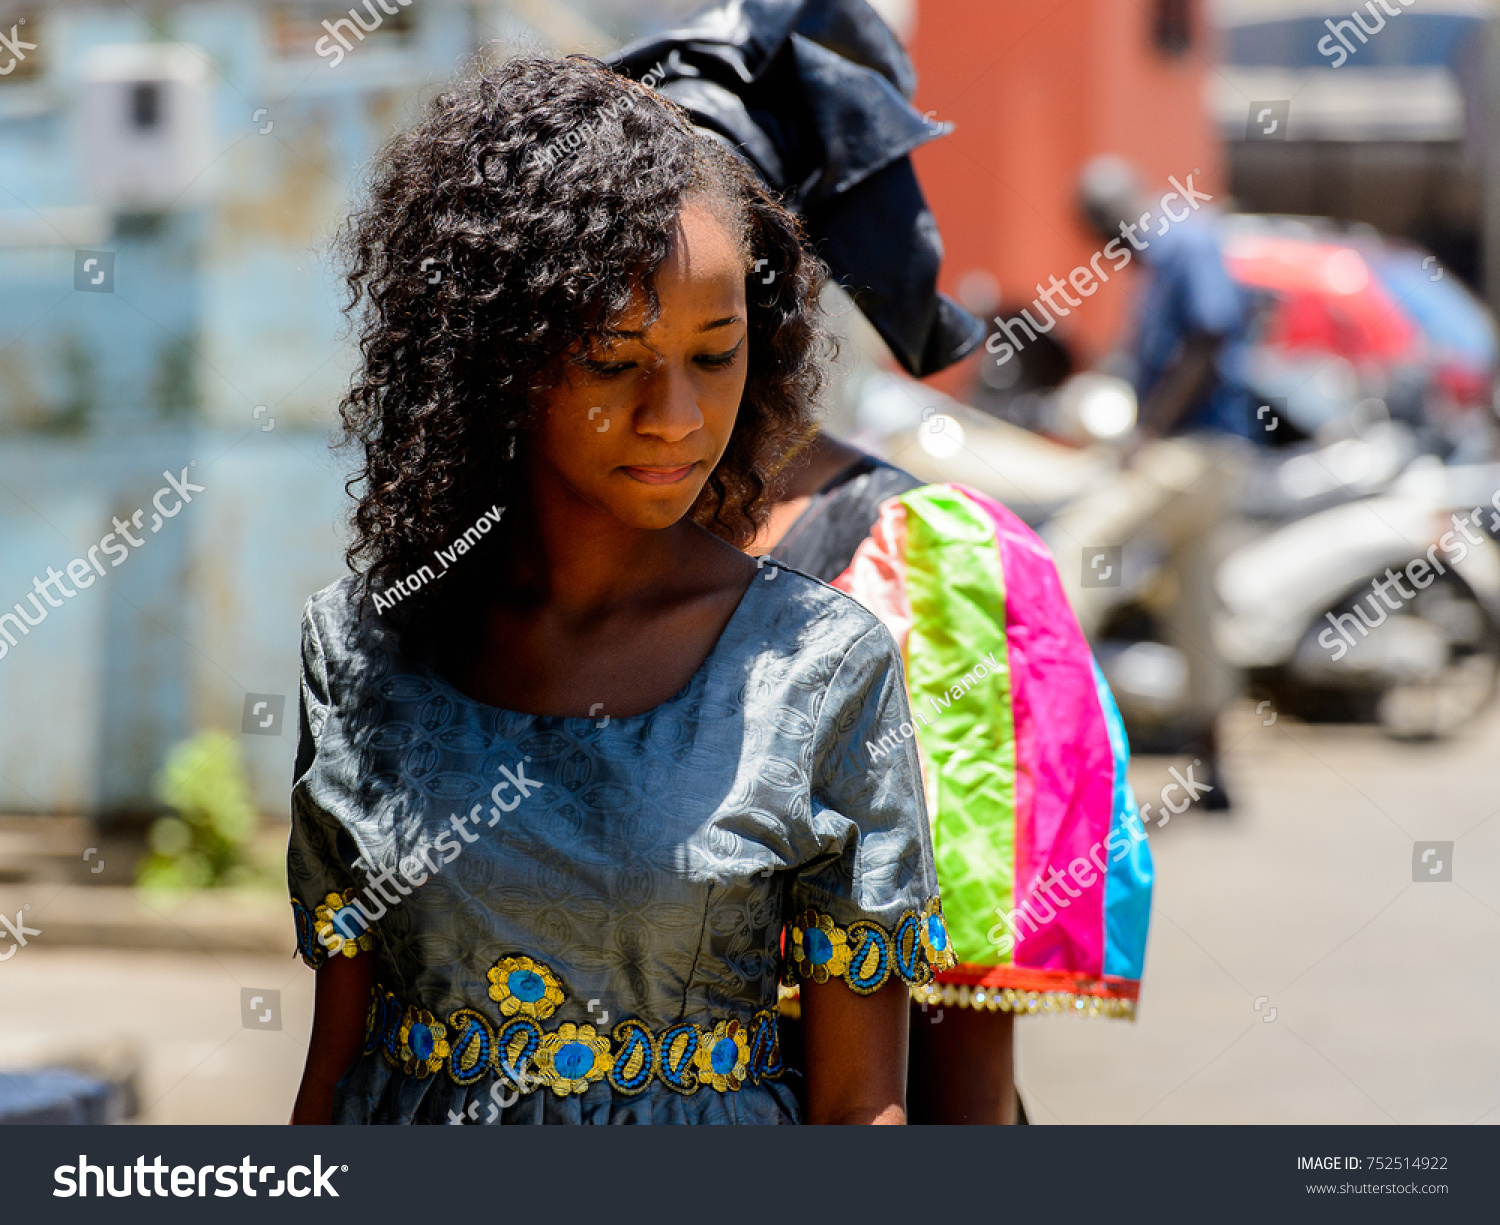 femeie datand in Dakar)